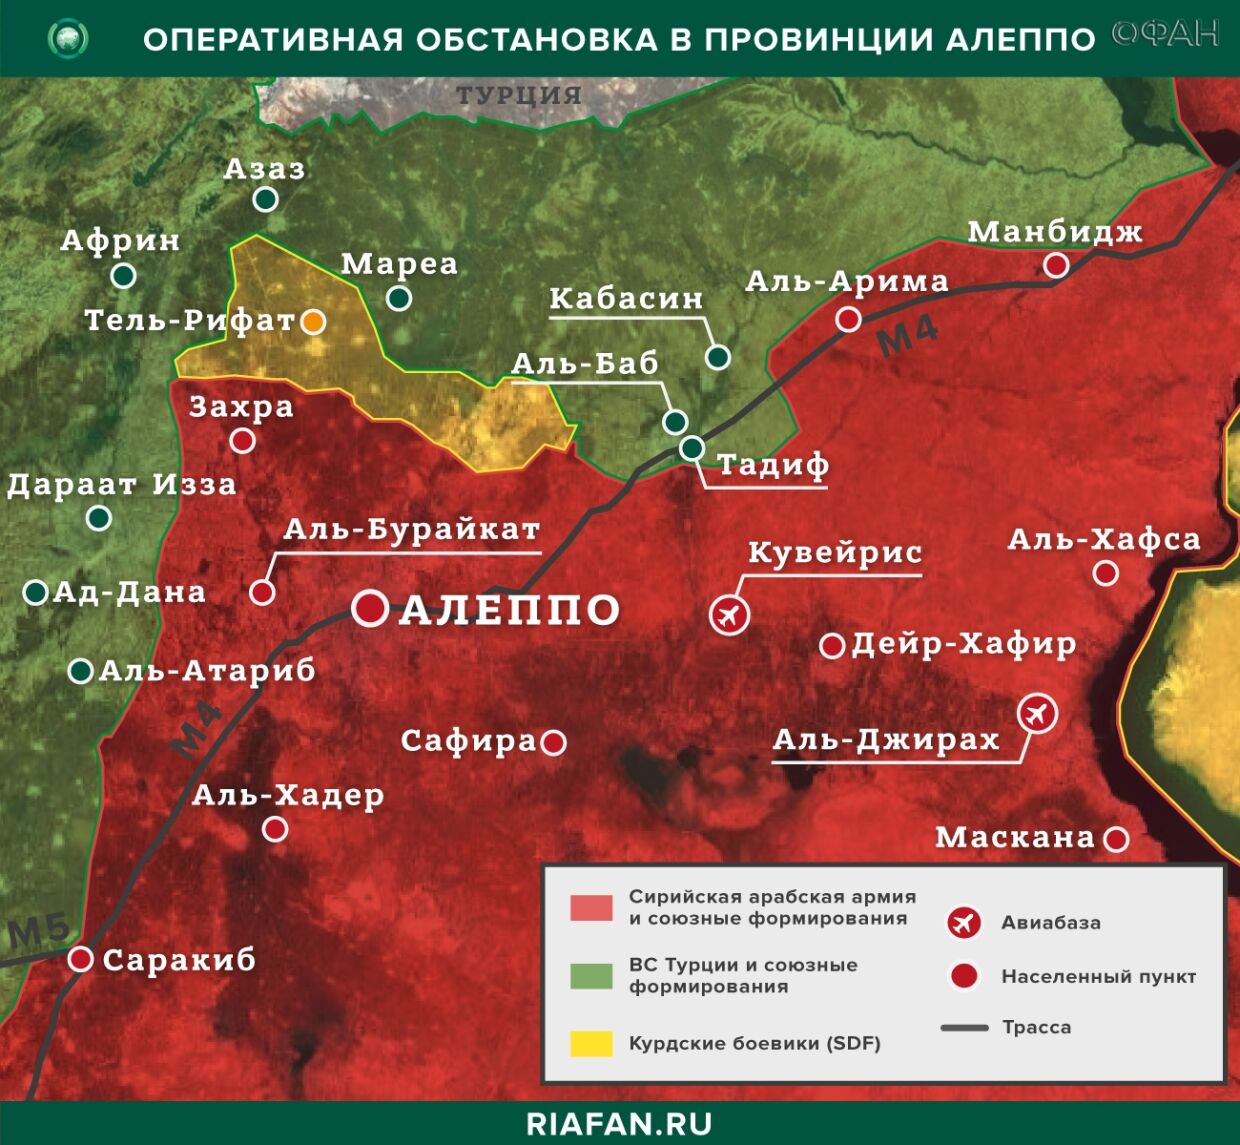 Resultados diarios de Siria para 13 Mayo 06.00: Explosión en la zona de patrulla turca y rusa en Idlib, los turcos neutralizados 3 Miembros del PKK en Al-Hasakah